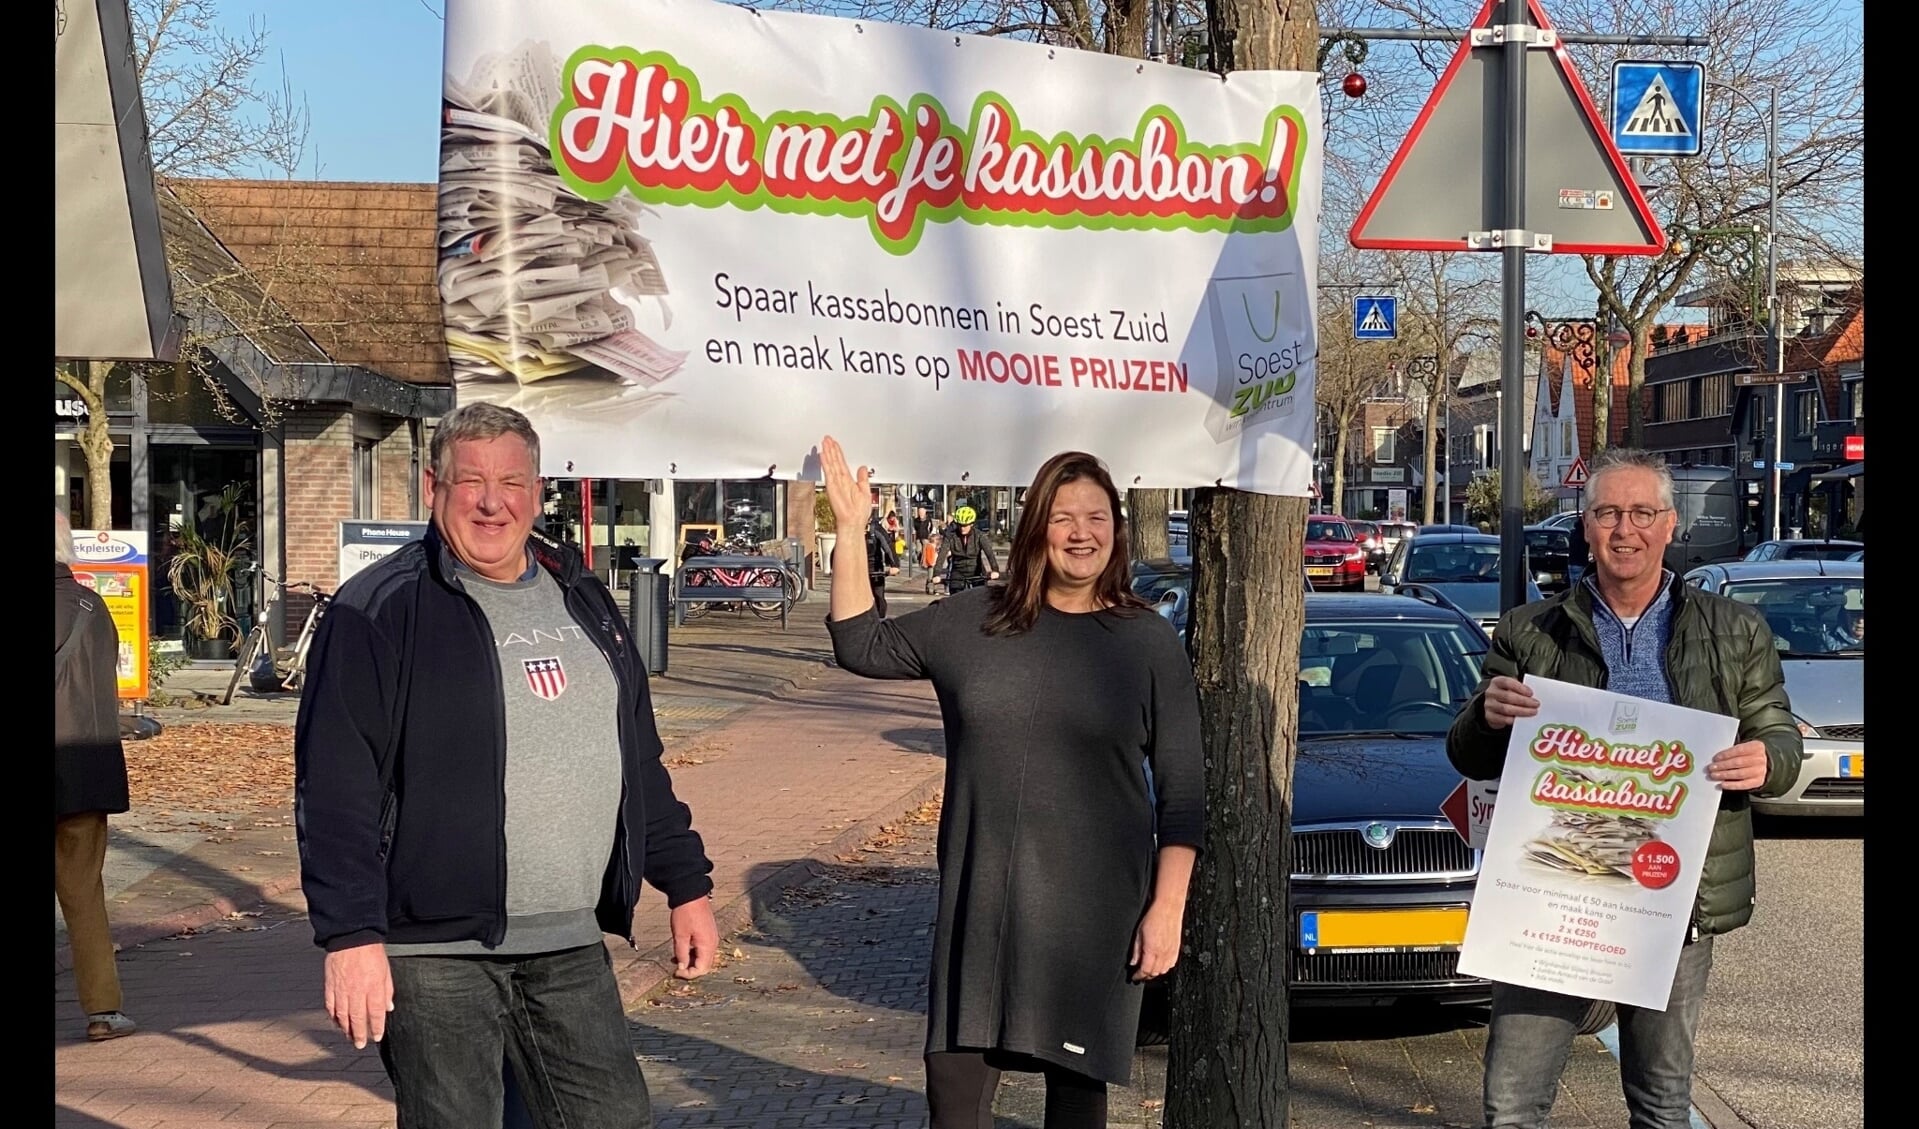 Mels van Vulpen, Sophia Huttema en Wim Brouwer van Winkelcentrum Soest-Zuid pakken uit met kassabonnen.